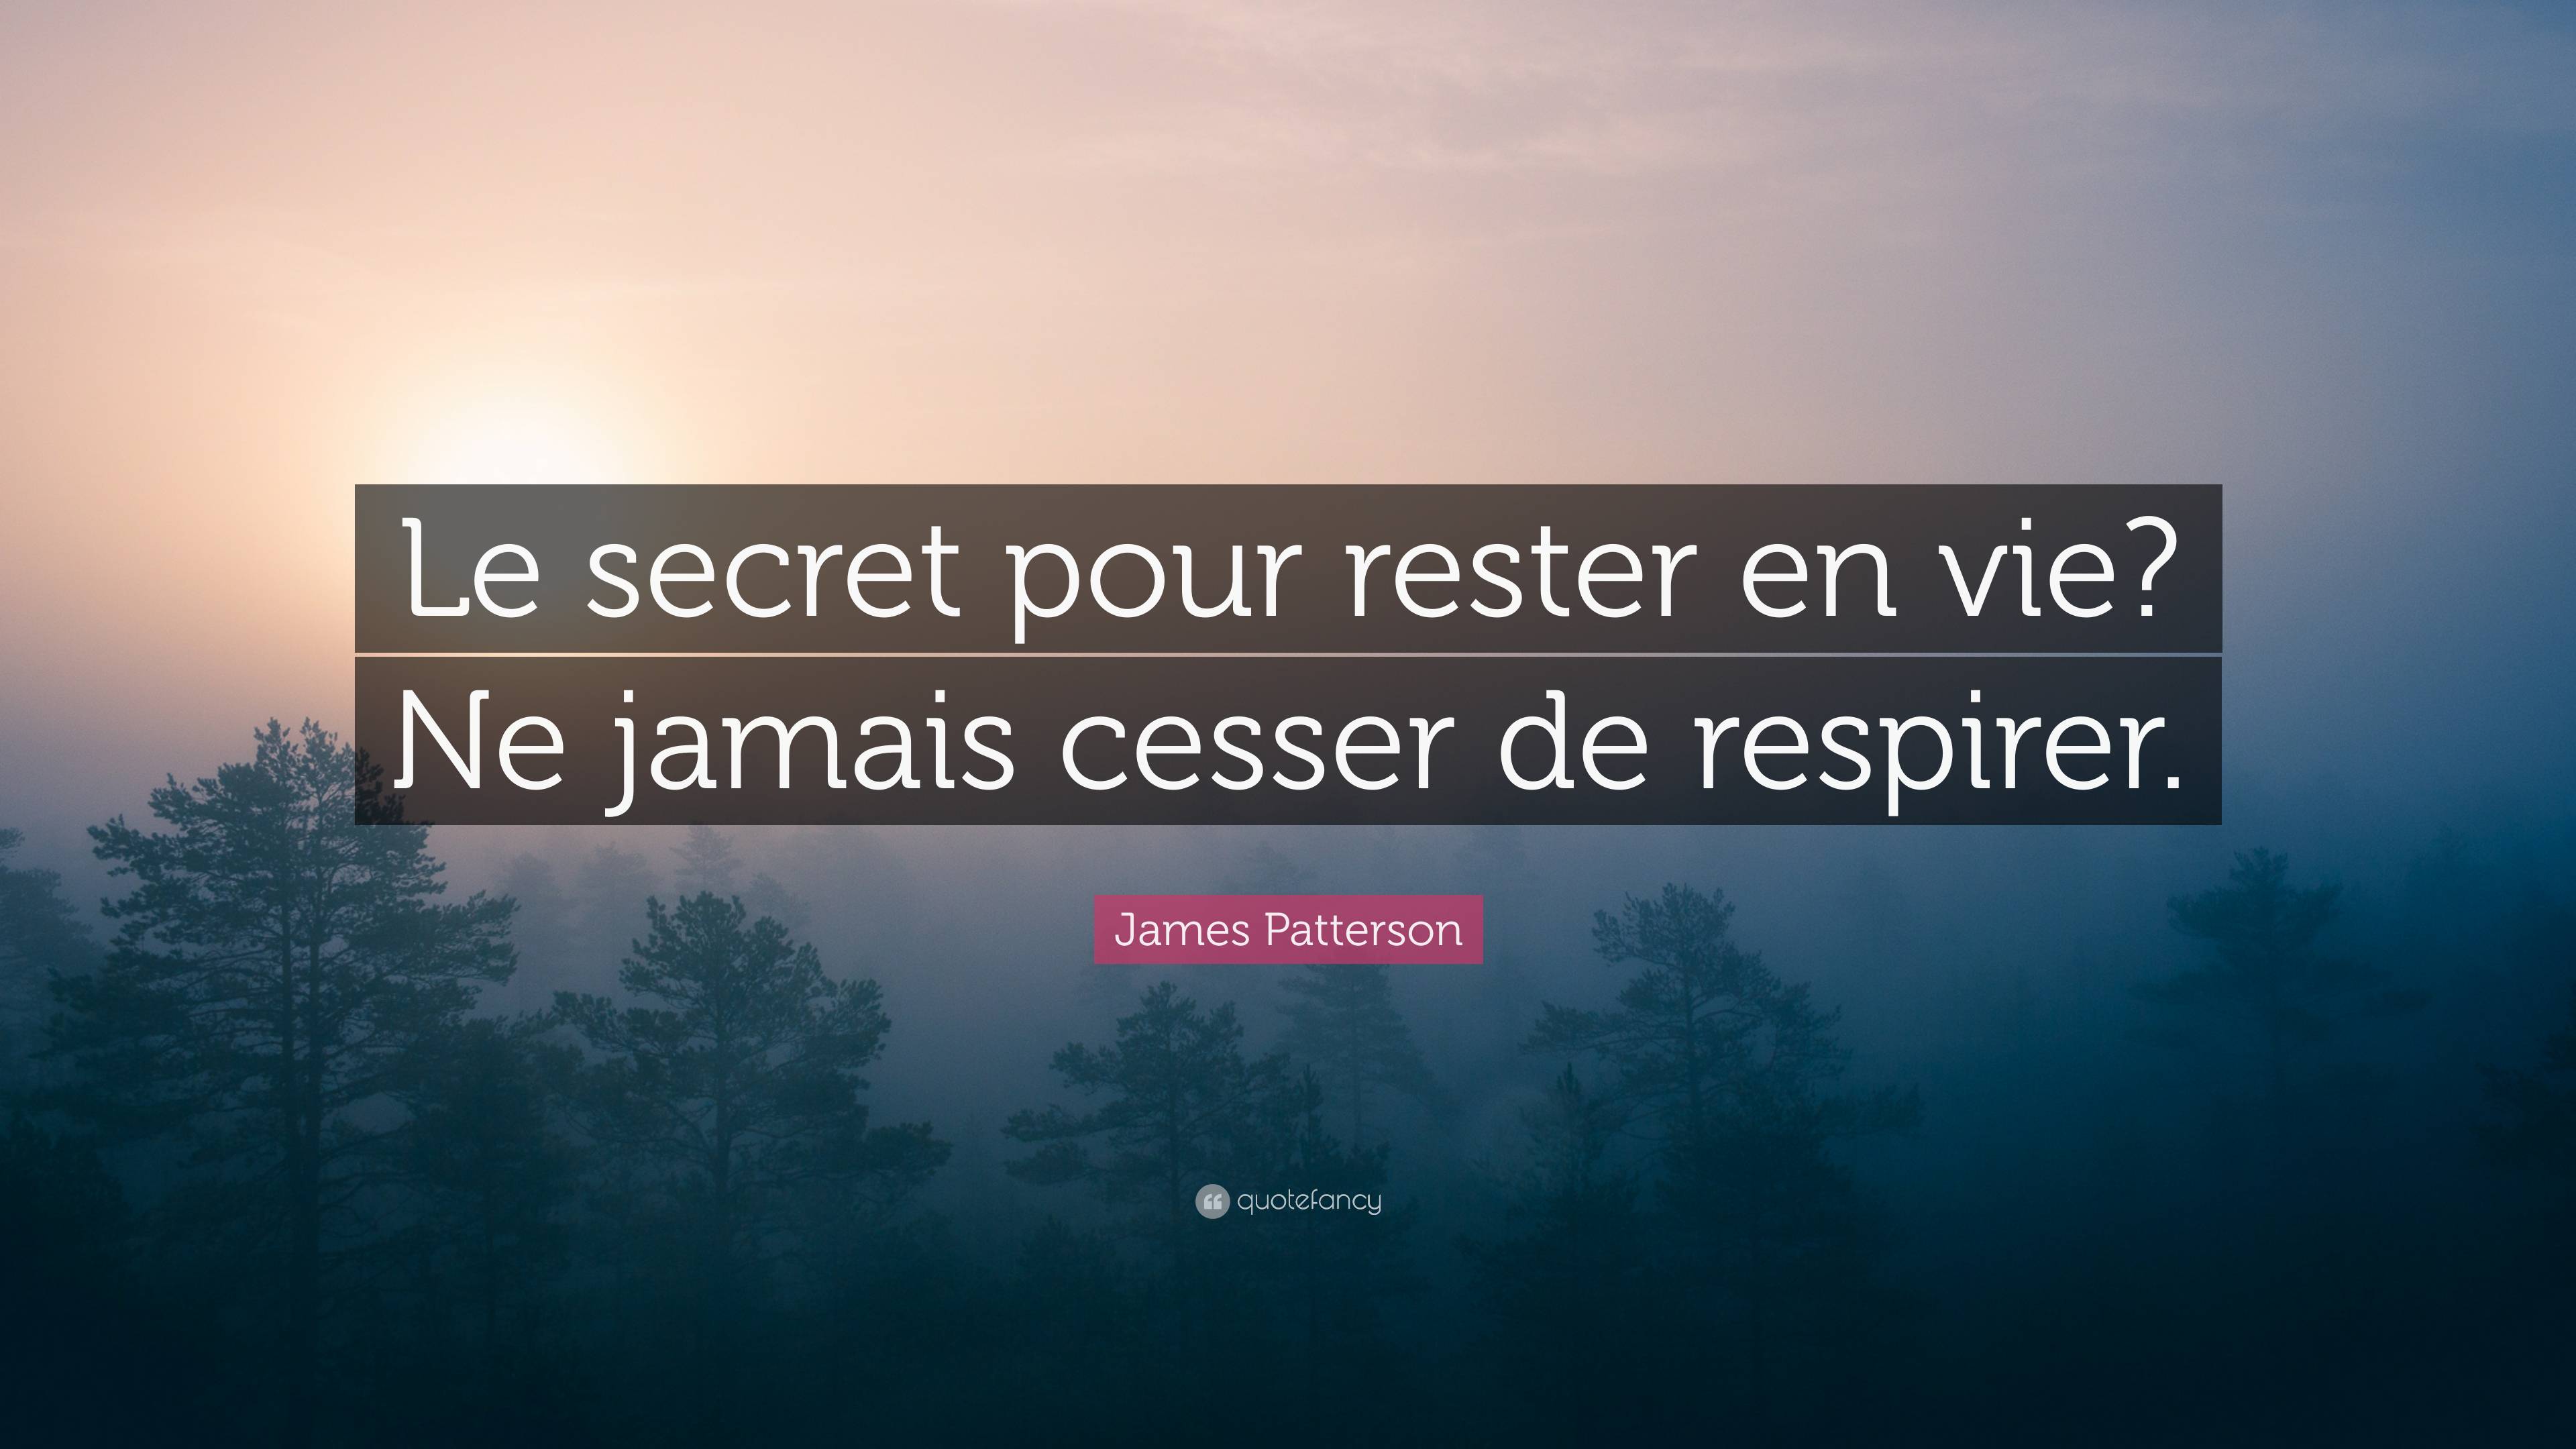 James Patterson Quote: “Le secret pour rester en vie? Ne jamais cesser de  respirer.”